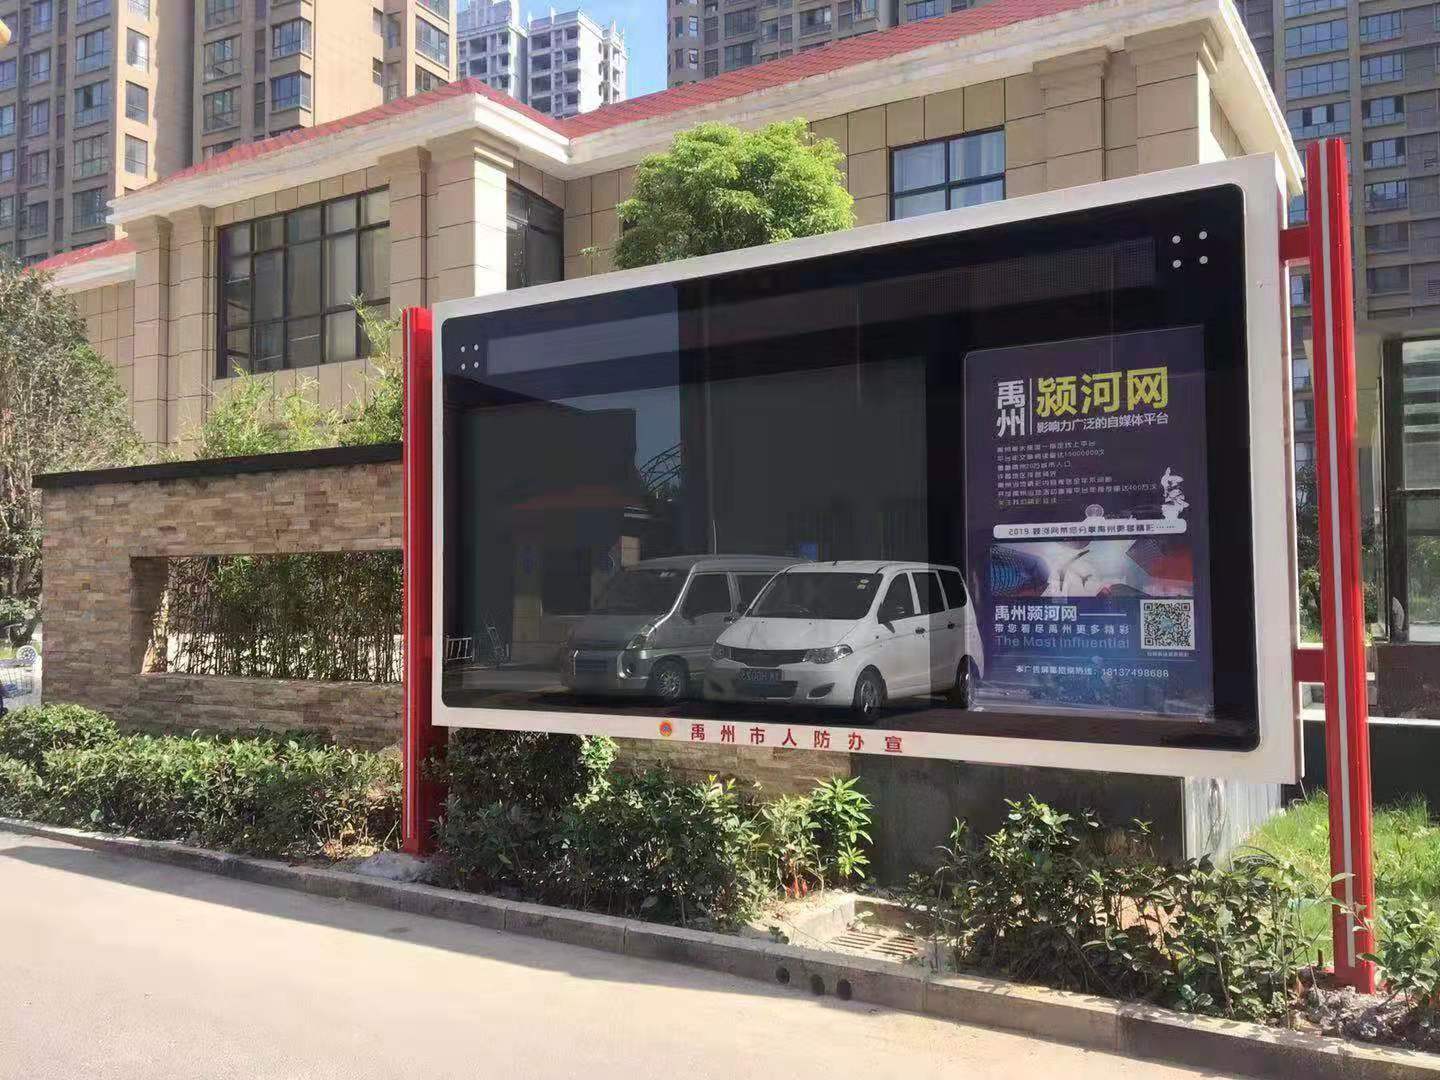 宣传显示屏走进居民小区禹州人防宣传有了新阵地